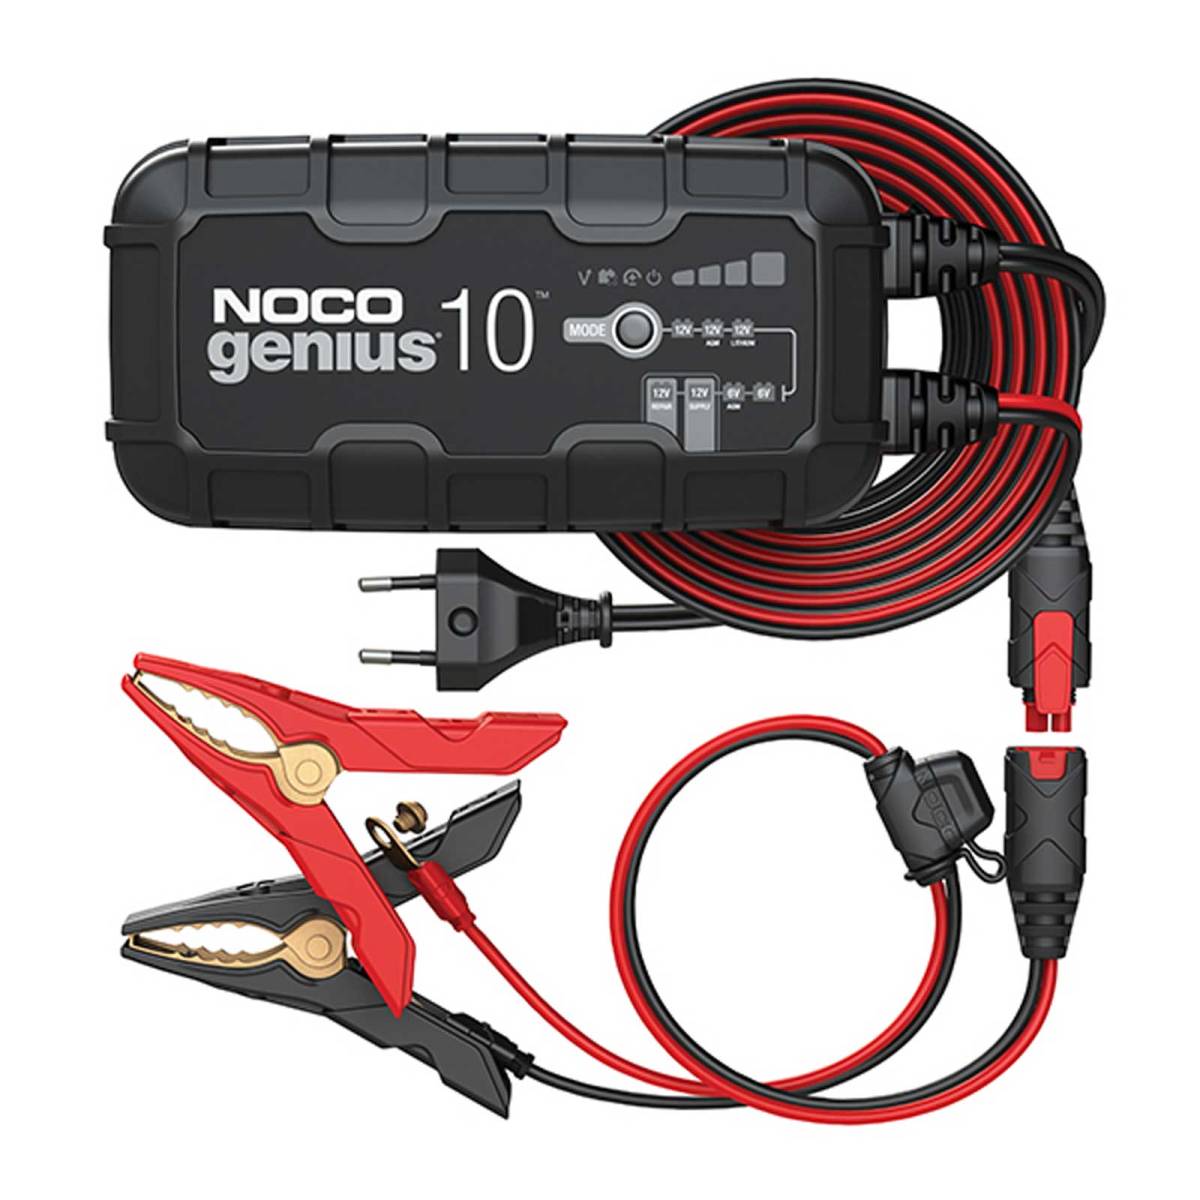 Noco Genius Caricatore multifunzionale GENIUS10 EU 6V 12V 10A per batterie al piombo e al litio fino a 230Ah